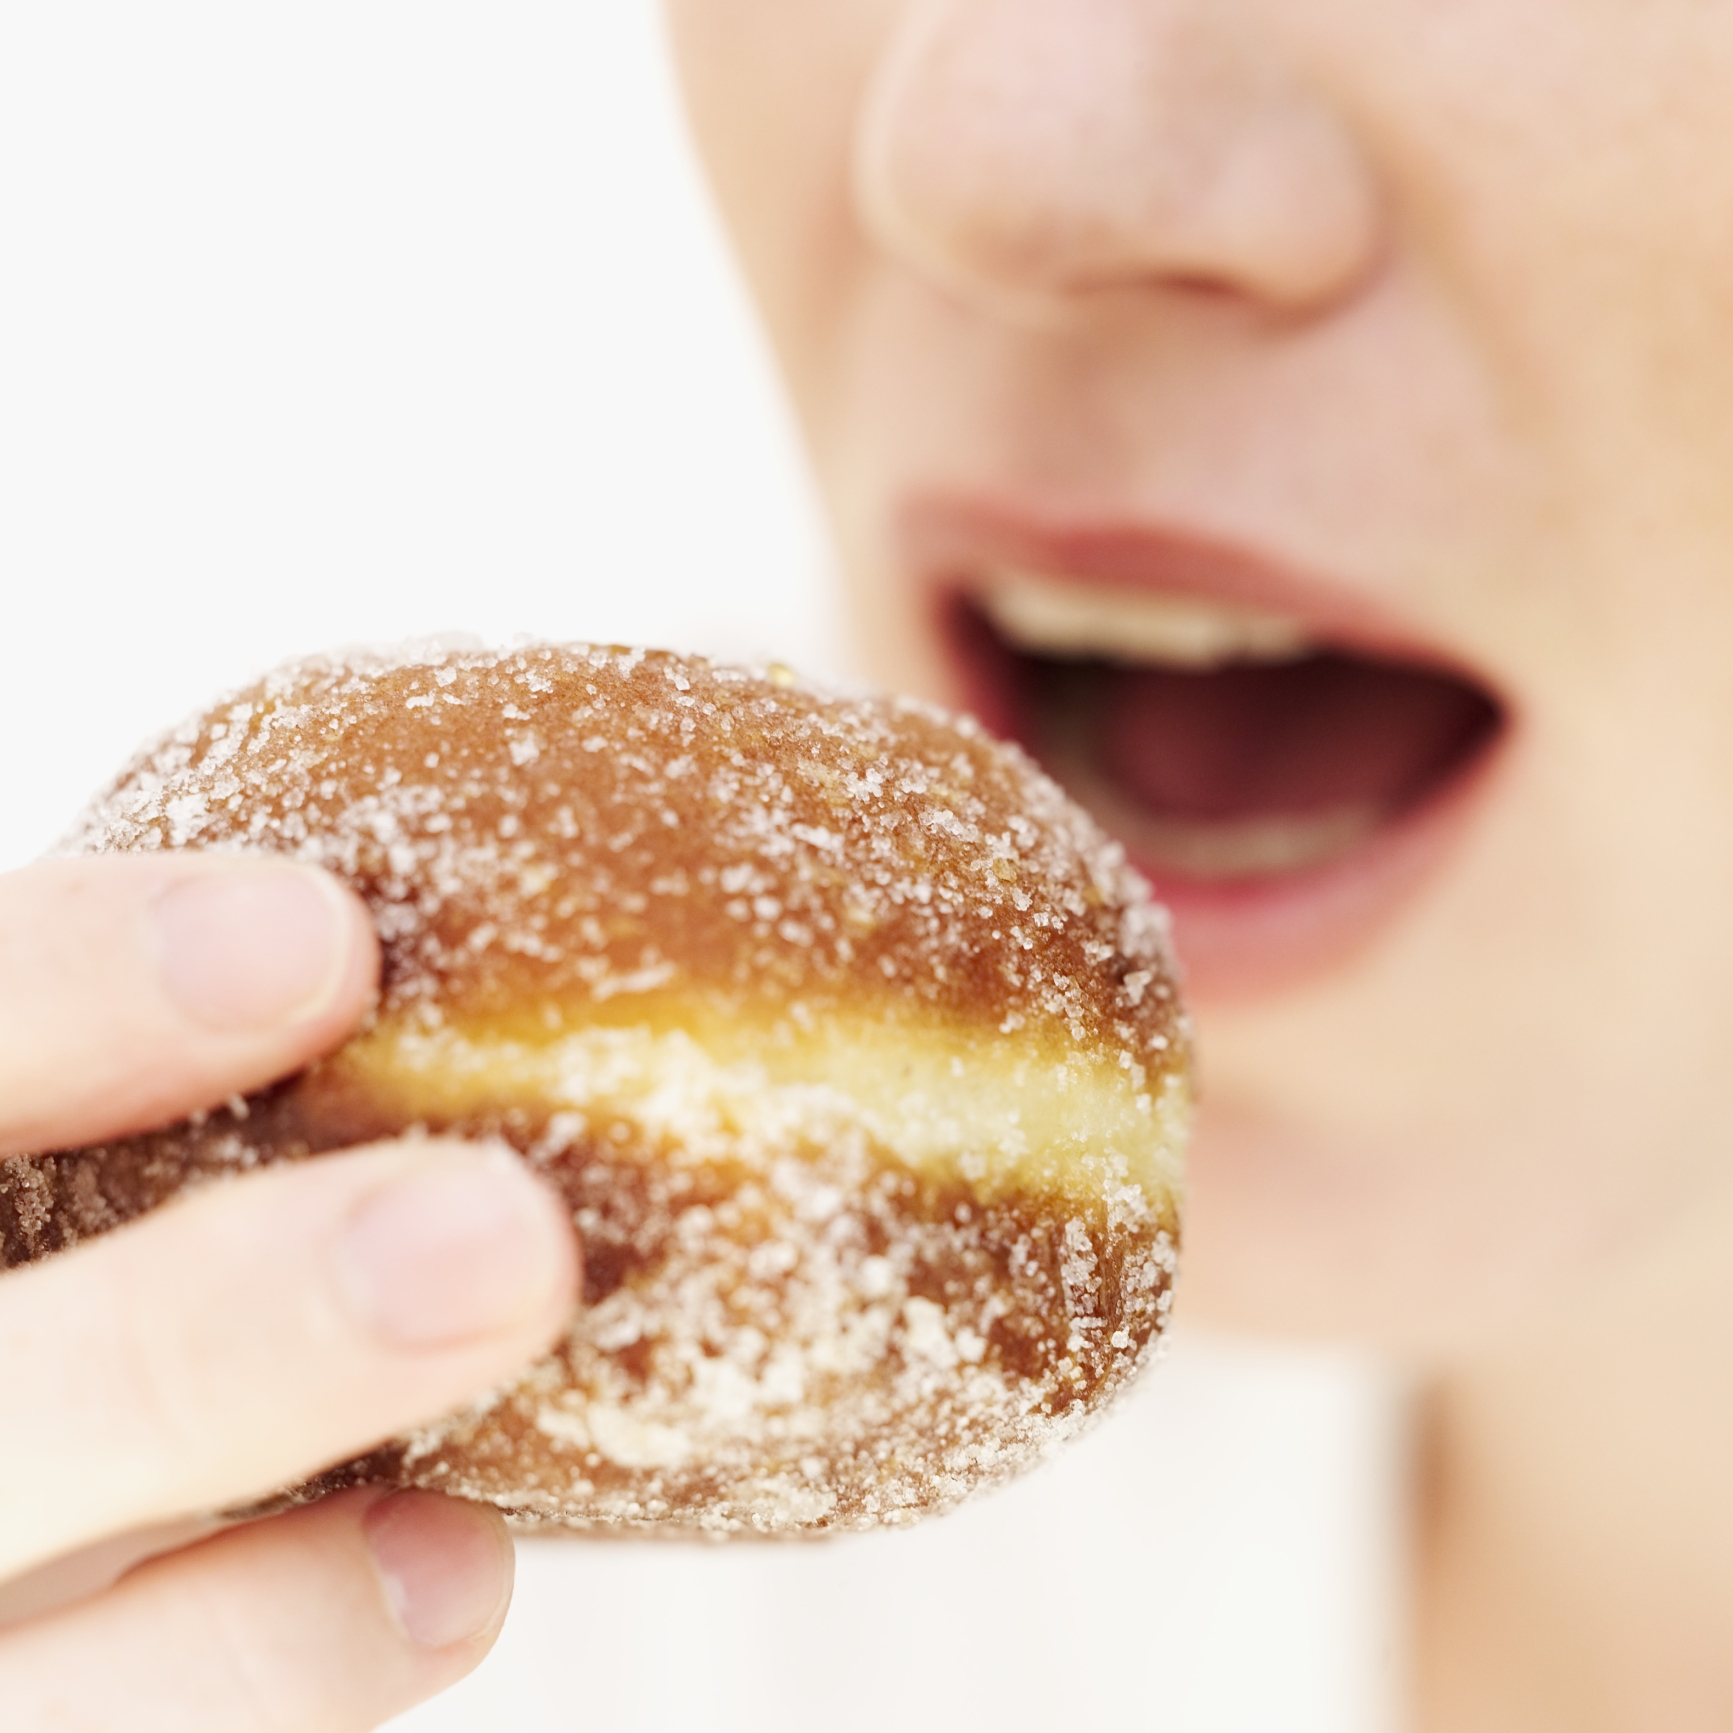 Zuckerkonsum könnte Tumorrisiko erhöhen